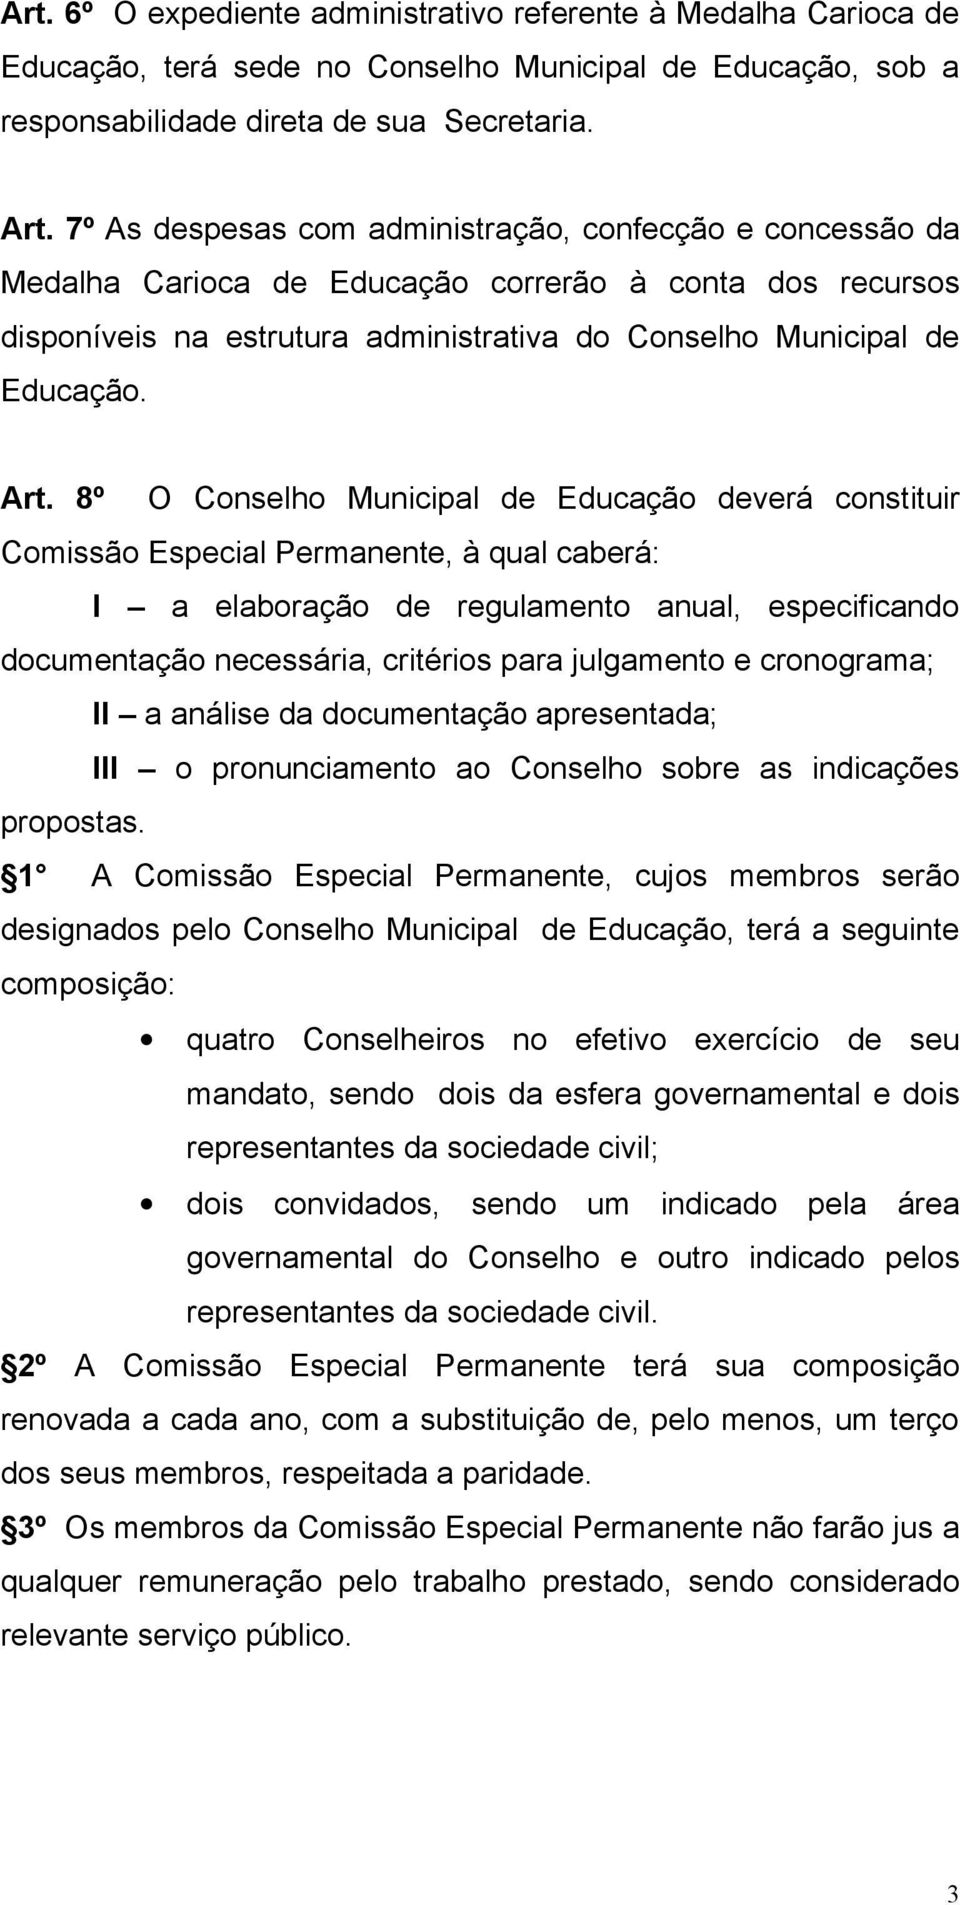 8º O Conselho Municipal de Educação deverá constituir Comissão Especial Permanente, à qual caberá: I a elaboração de regulamento anual, especificando documentação necessária, critérios para